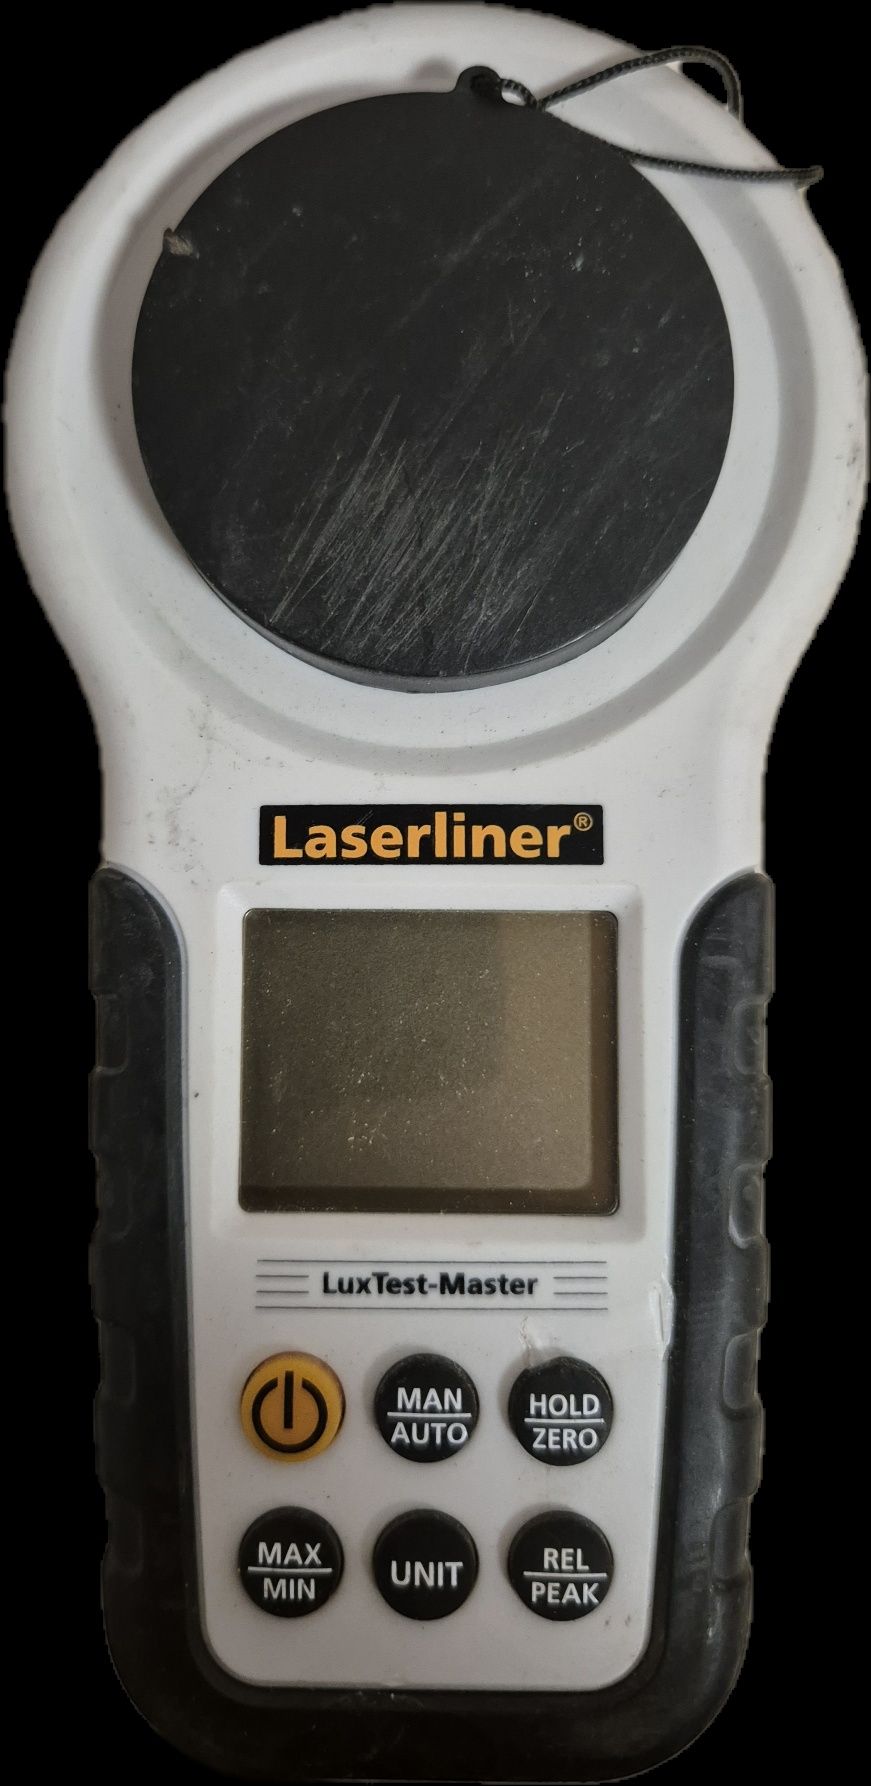 Luksomierz Laserliner LuxTest-Master